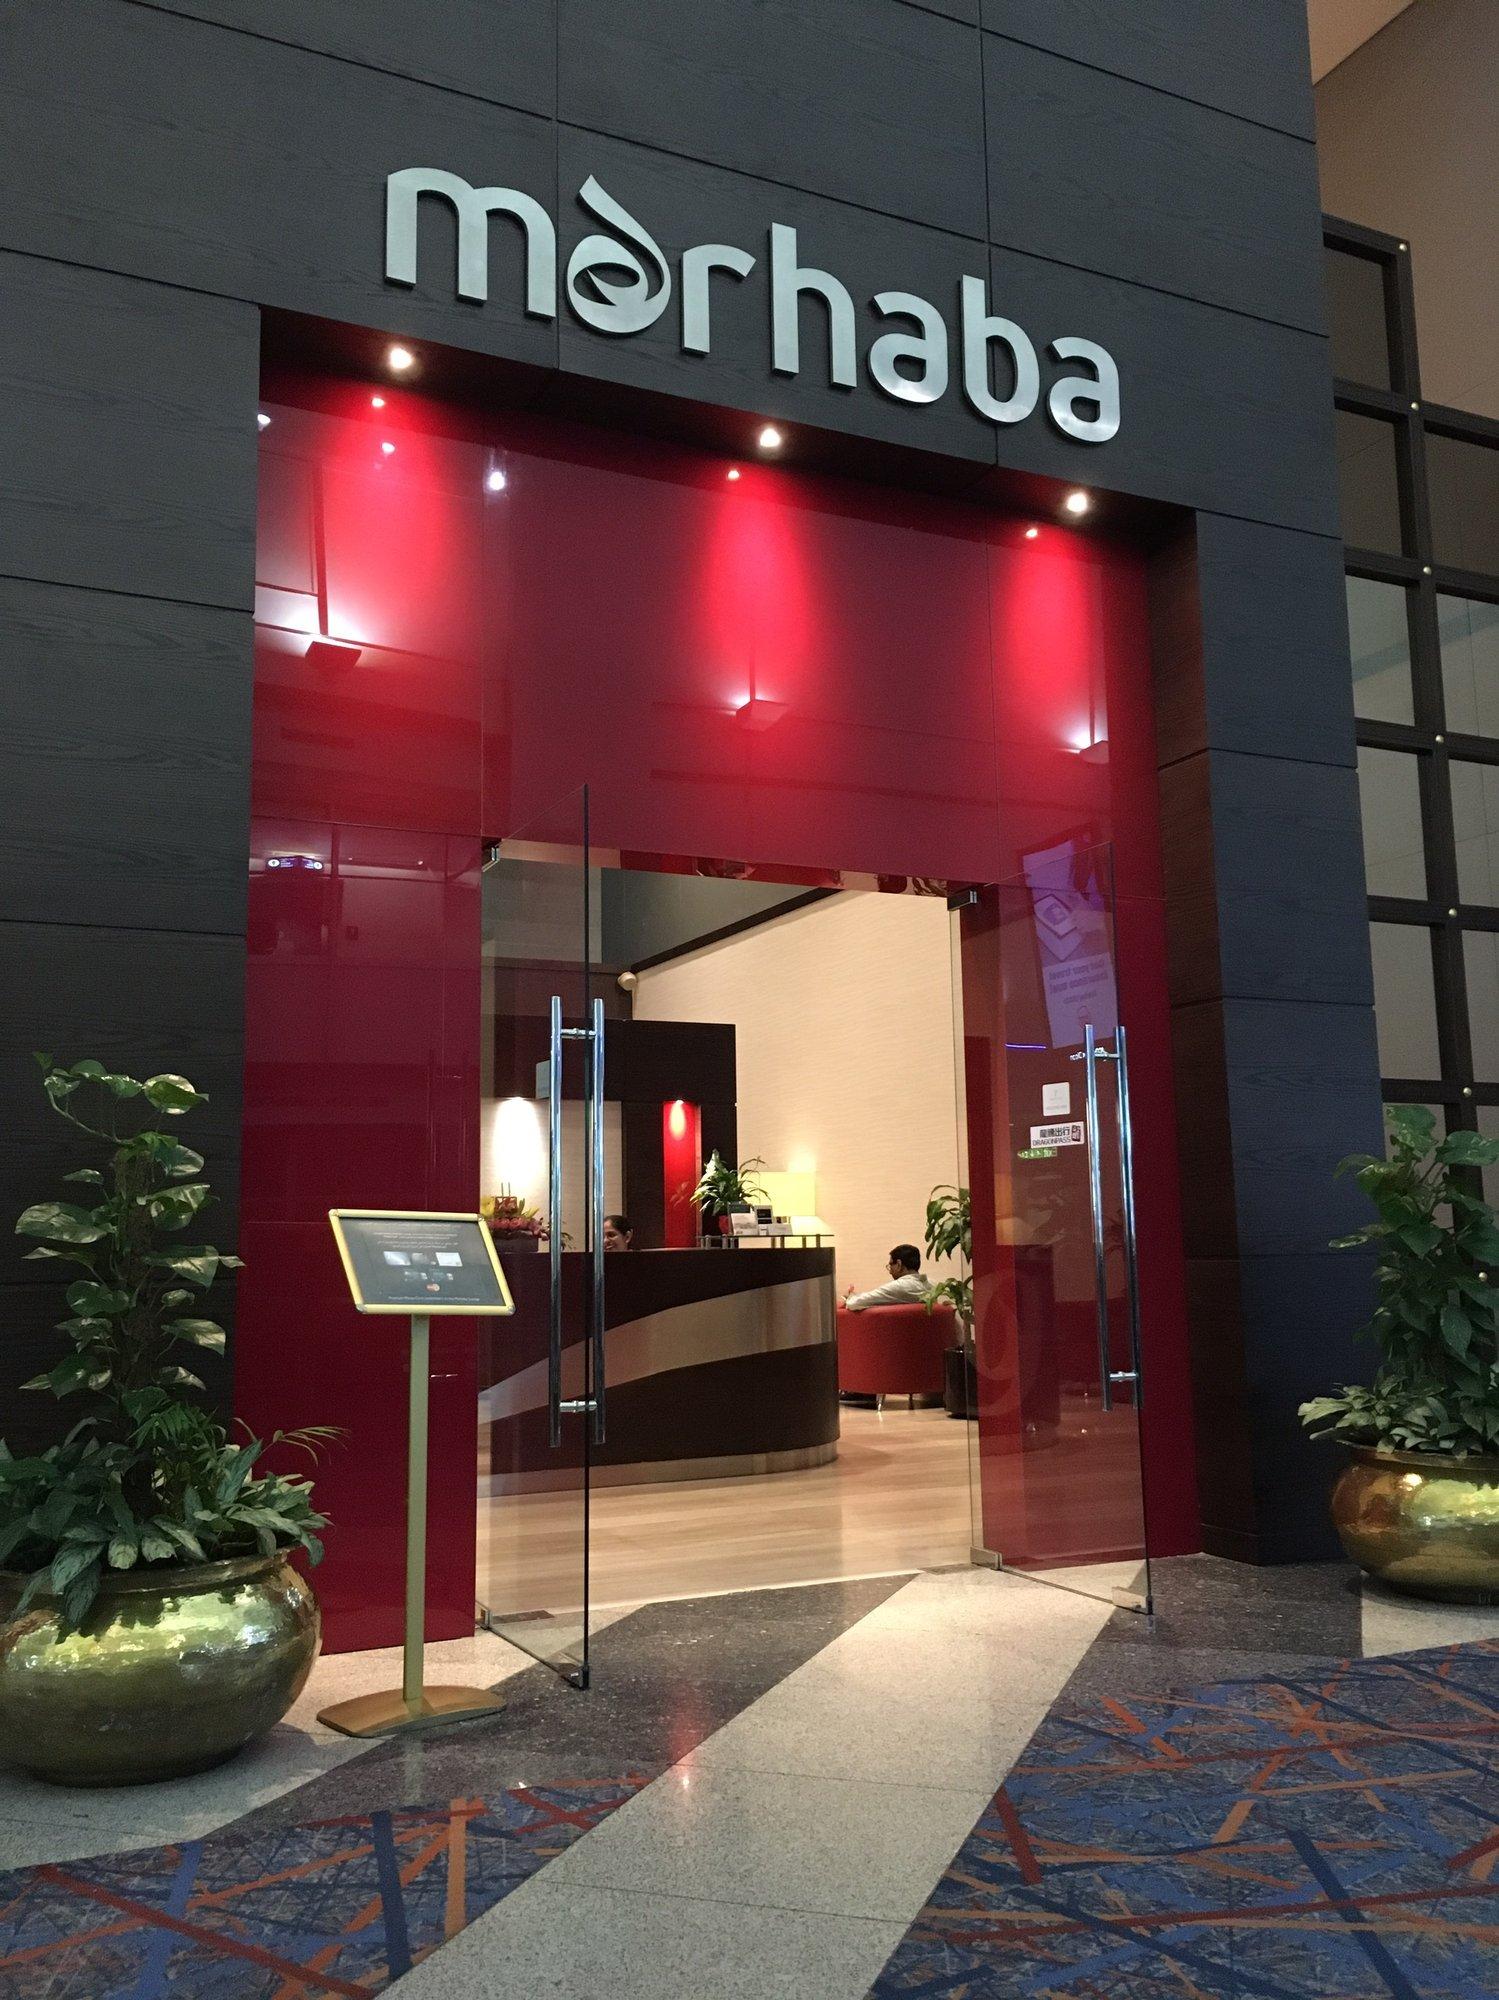 Marhaba Lounge image 12 of 64